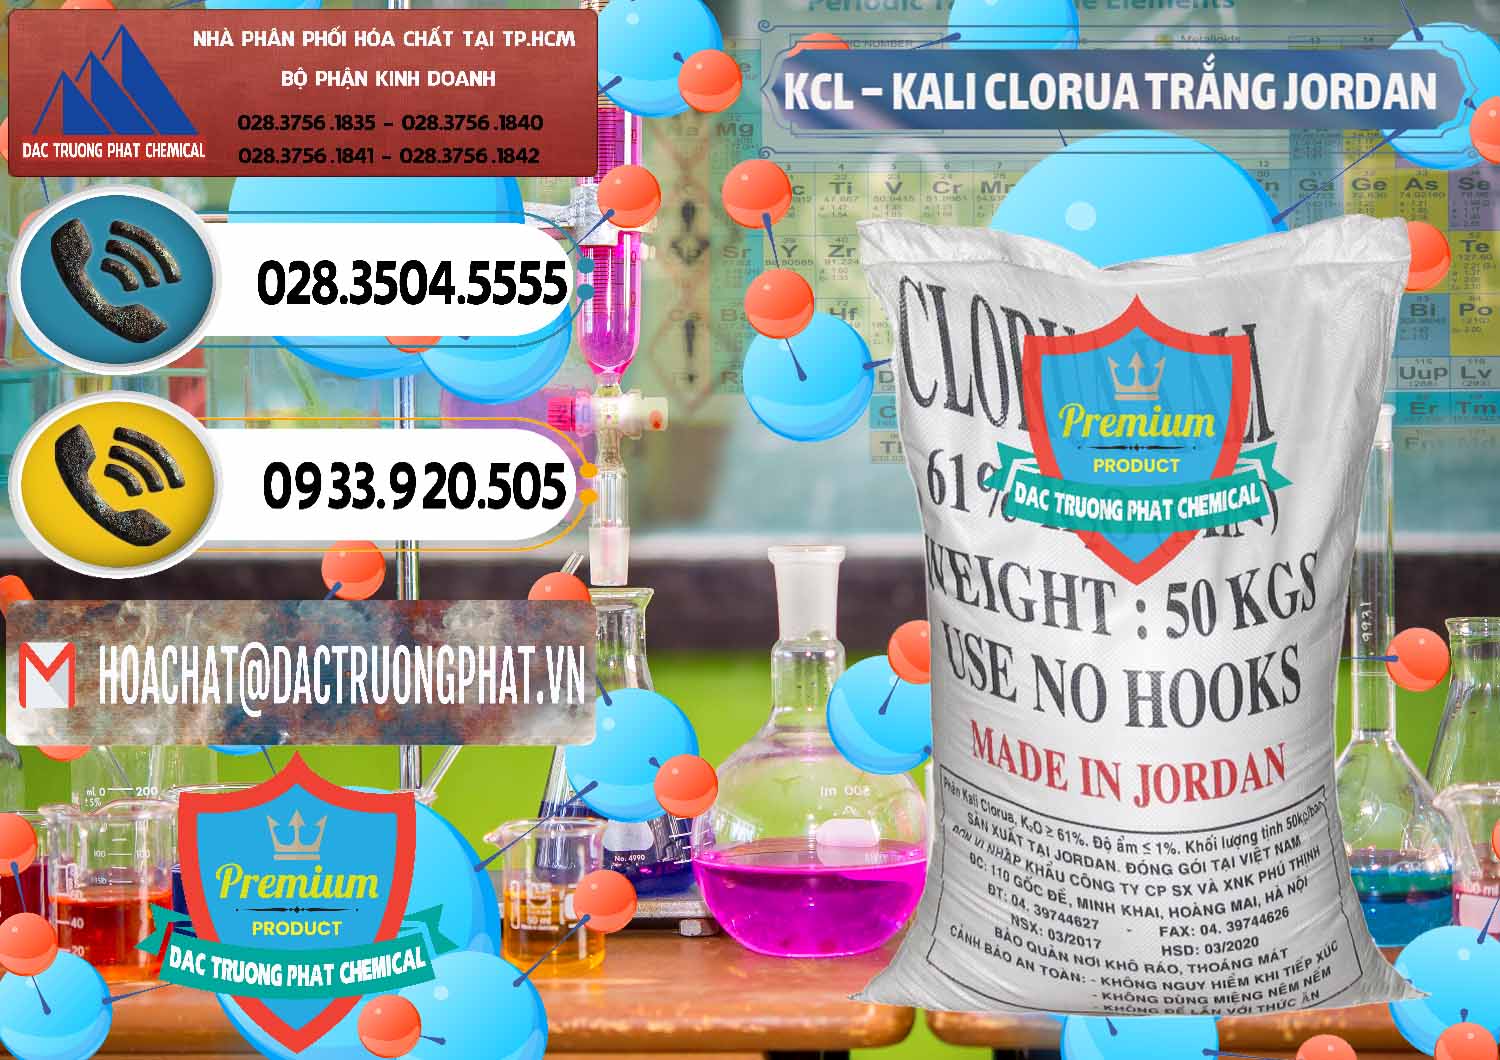 Công ty nhập khẩu - bán KCL – Kali Clorua Trắng Jordan - 0088 - Đơn vị cung cấp - phân phối hóa chất tại TP.HCM - hoachatdetnhuom.vn